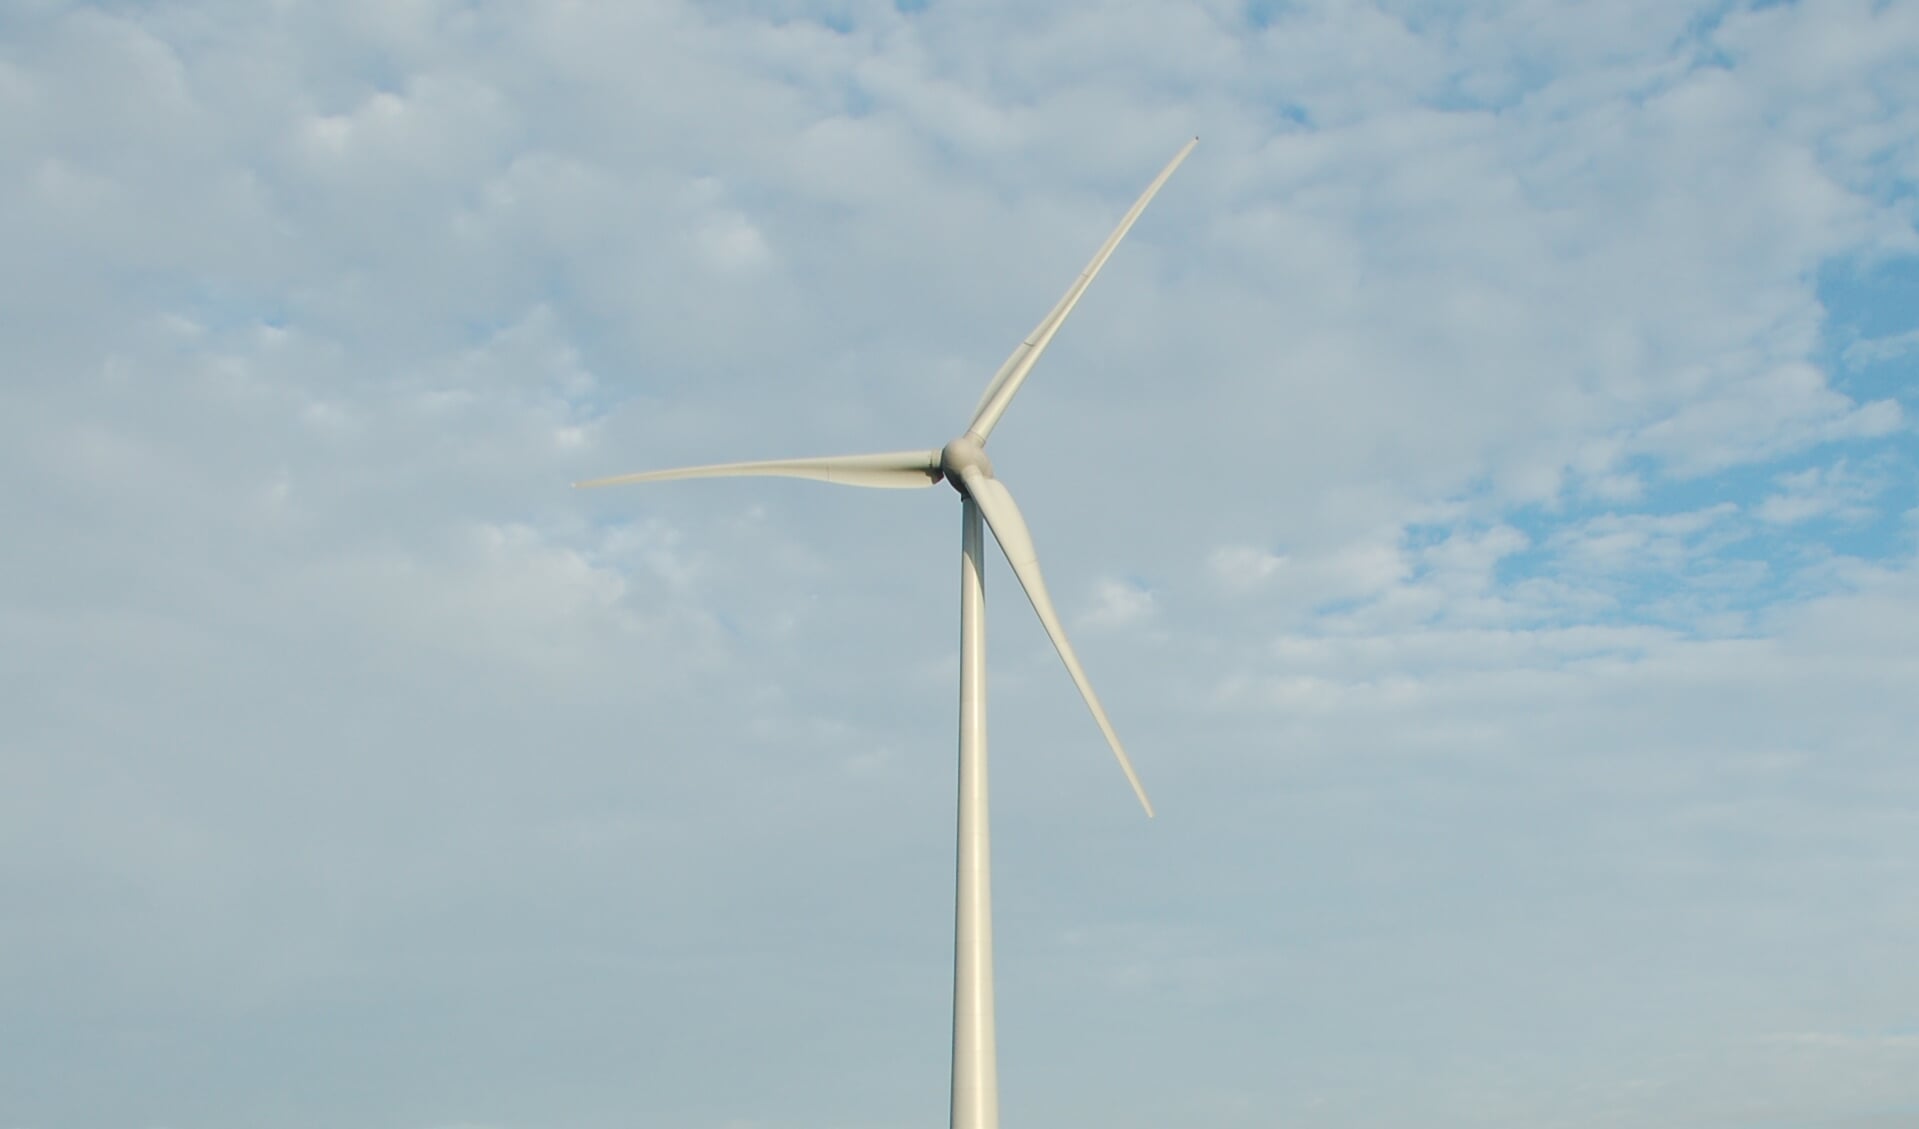 Het plan omvat het plaatsen van enorme windturbines van 250 meter in De Bleeken, op steenworp afstand van Vinkel en Loosbroek. 